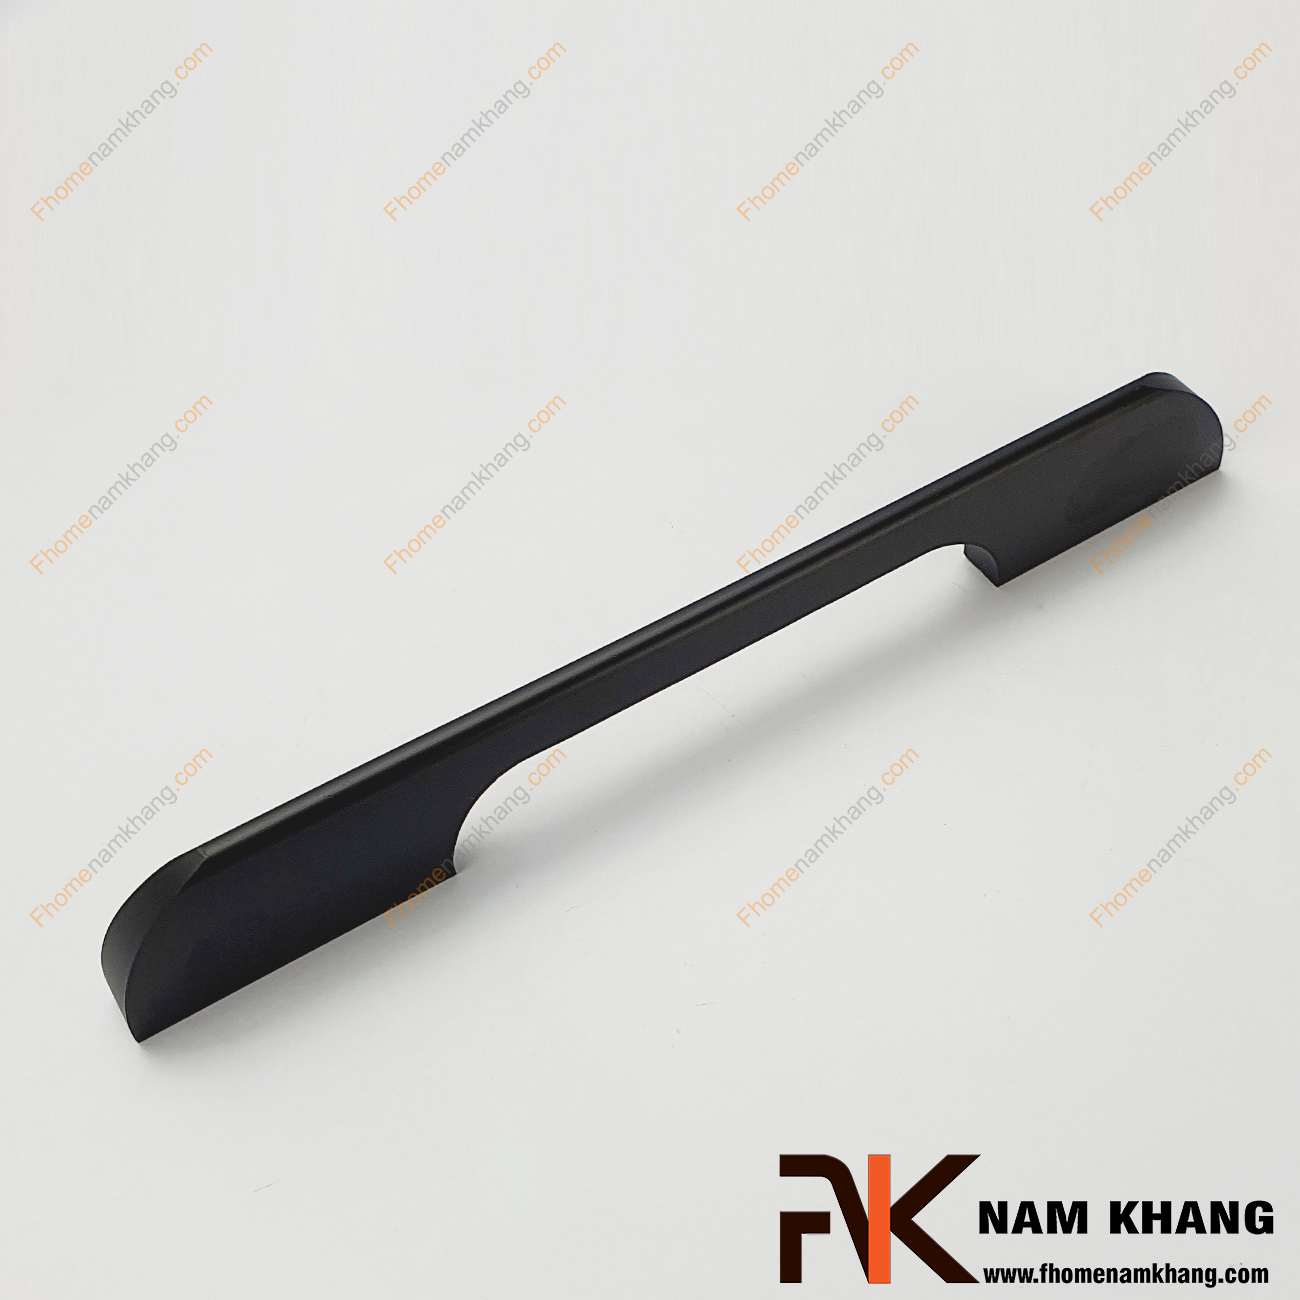 Tay nắm tủ dạng thanh dài đen NK089-D là loại tay nắm chuyên dùng cho các dạng tủ kệ có chiều dài lớn, đặc biệt là các dạng tủ quần áo.